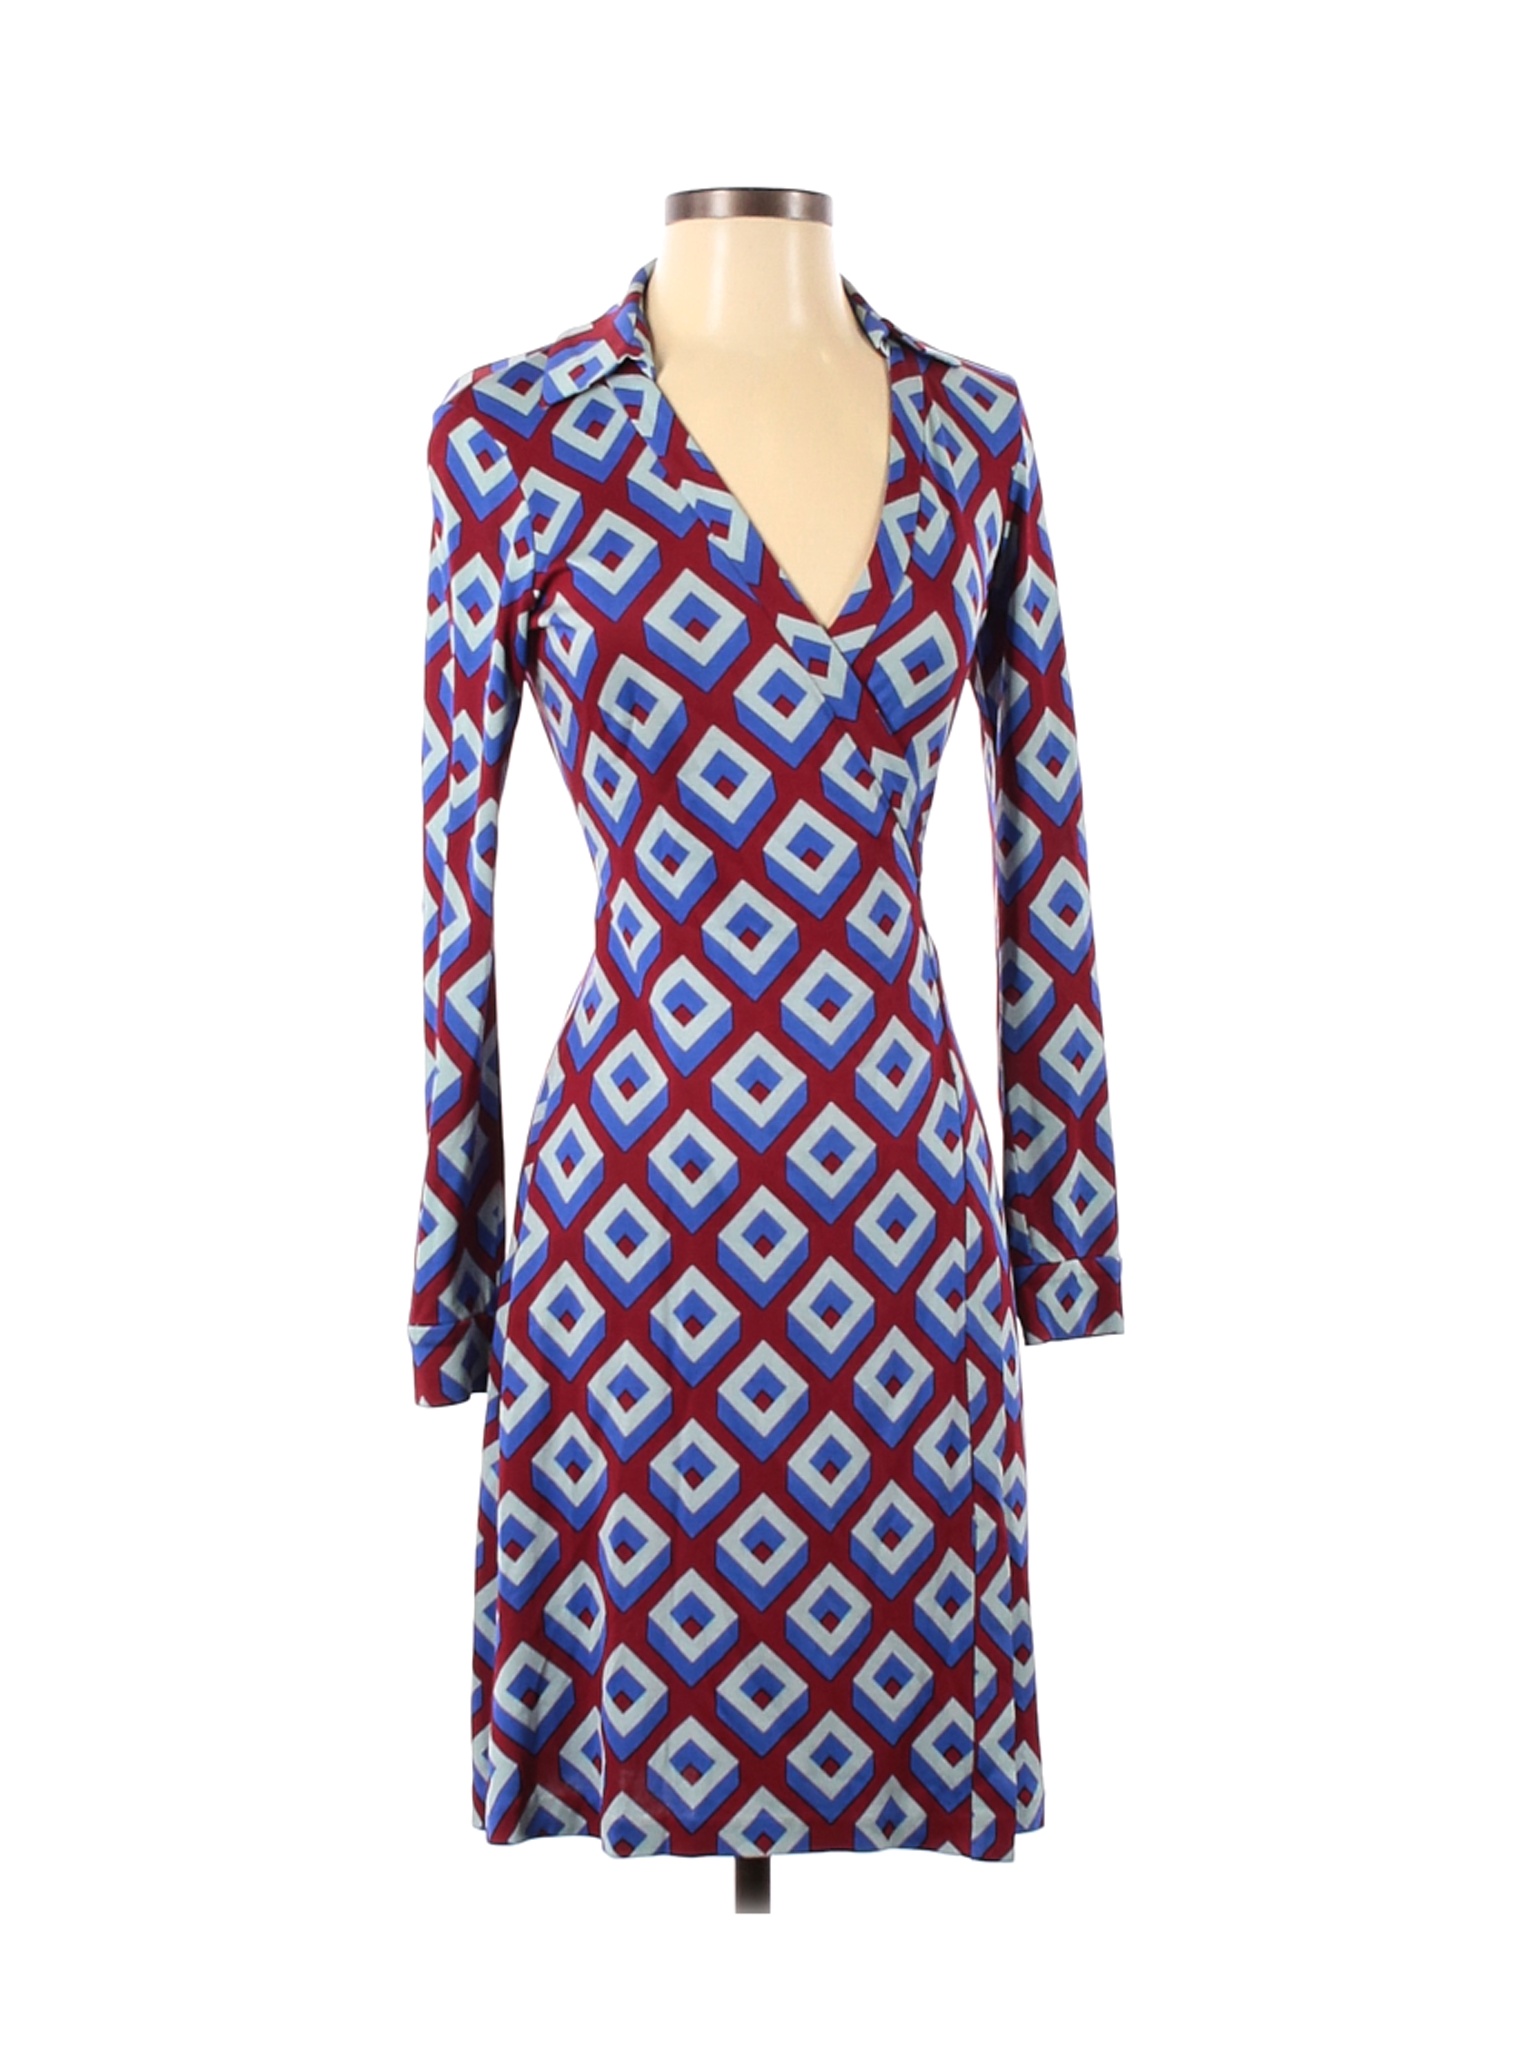 Diane von Furstenberg Women Red Casual Dress 4 | eBay